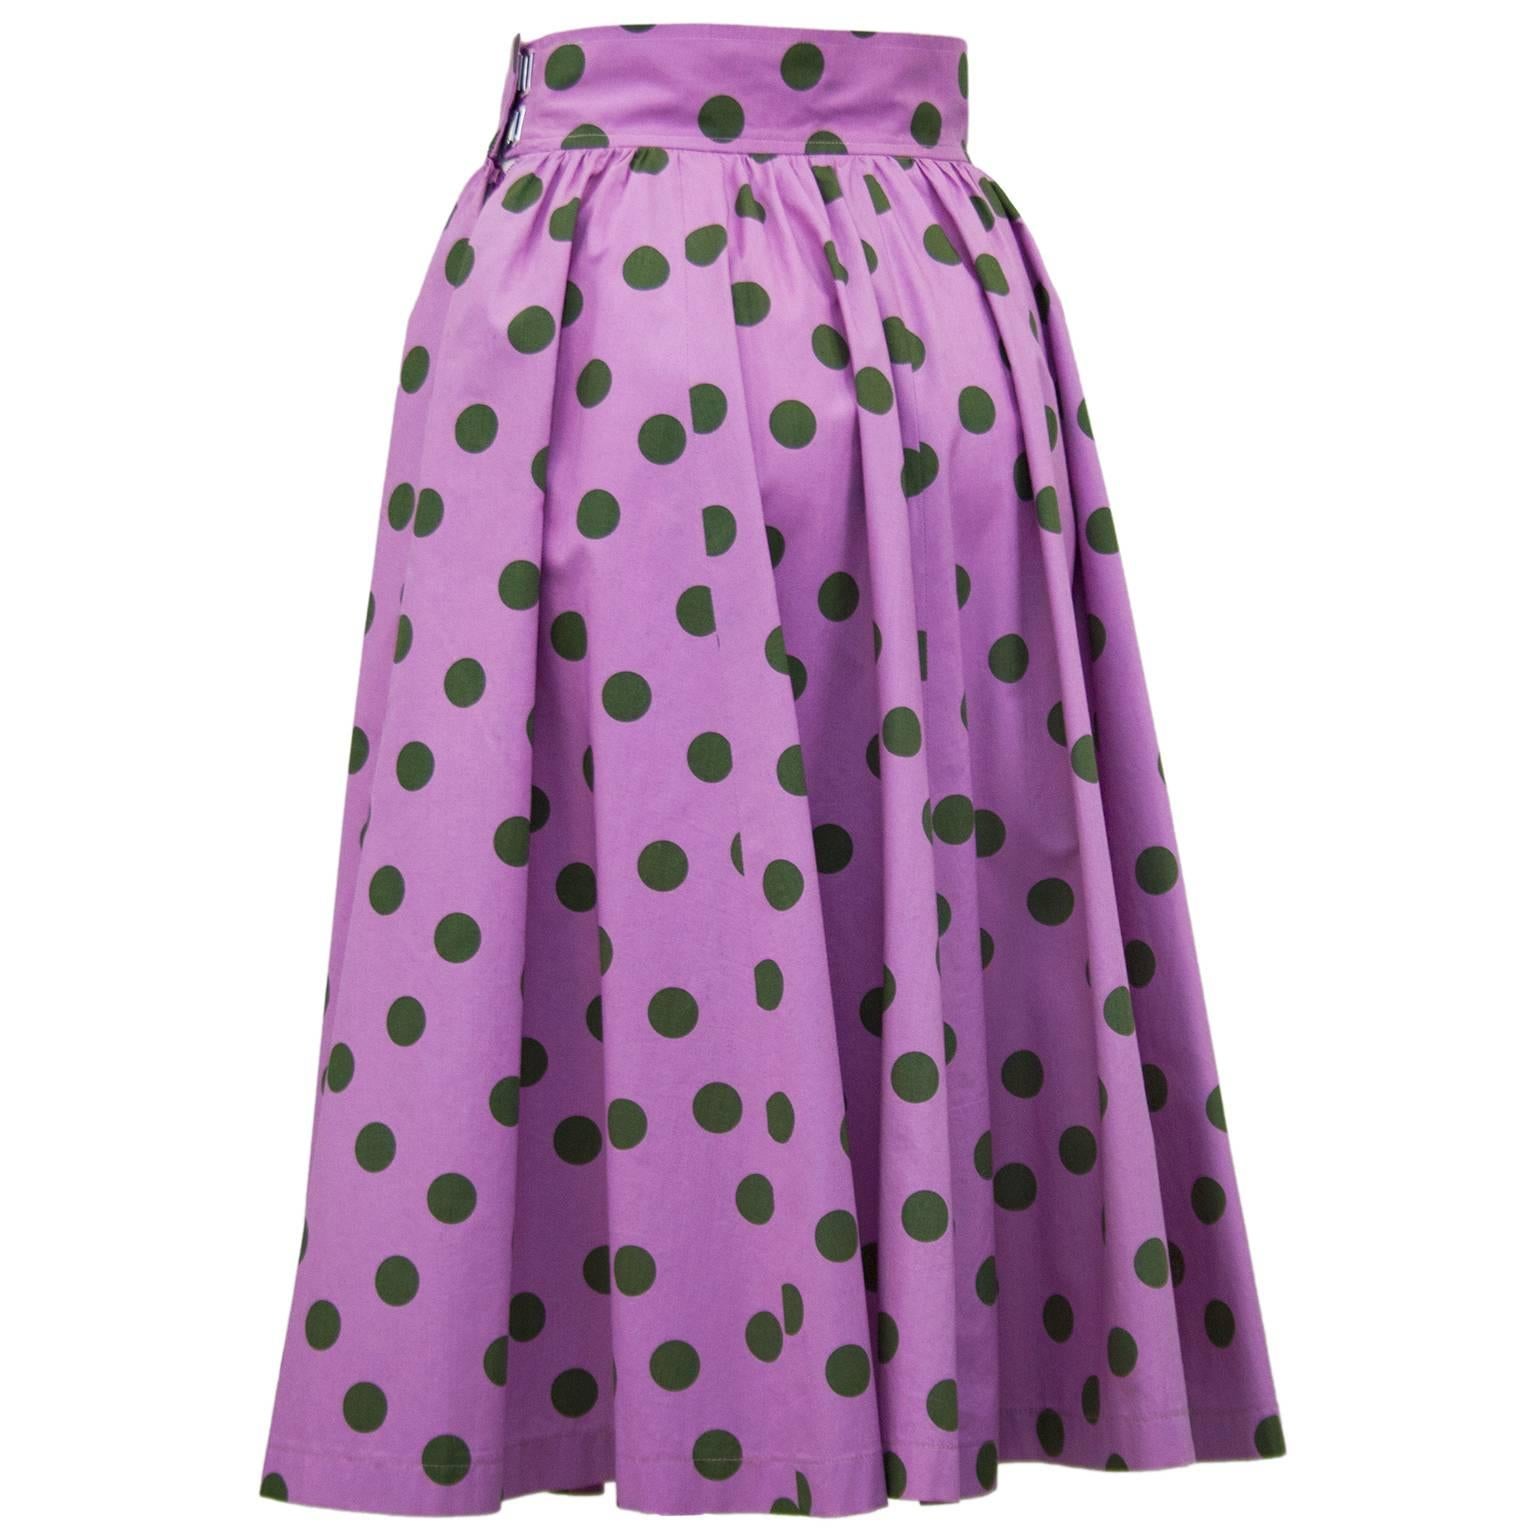 purple polka dot skirt